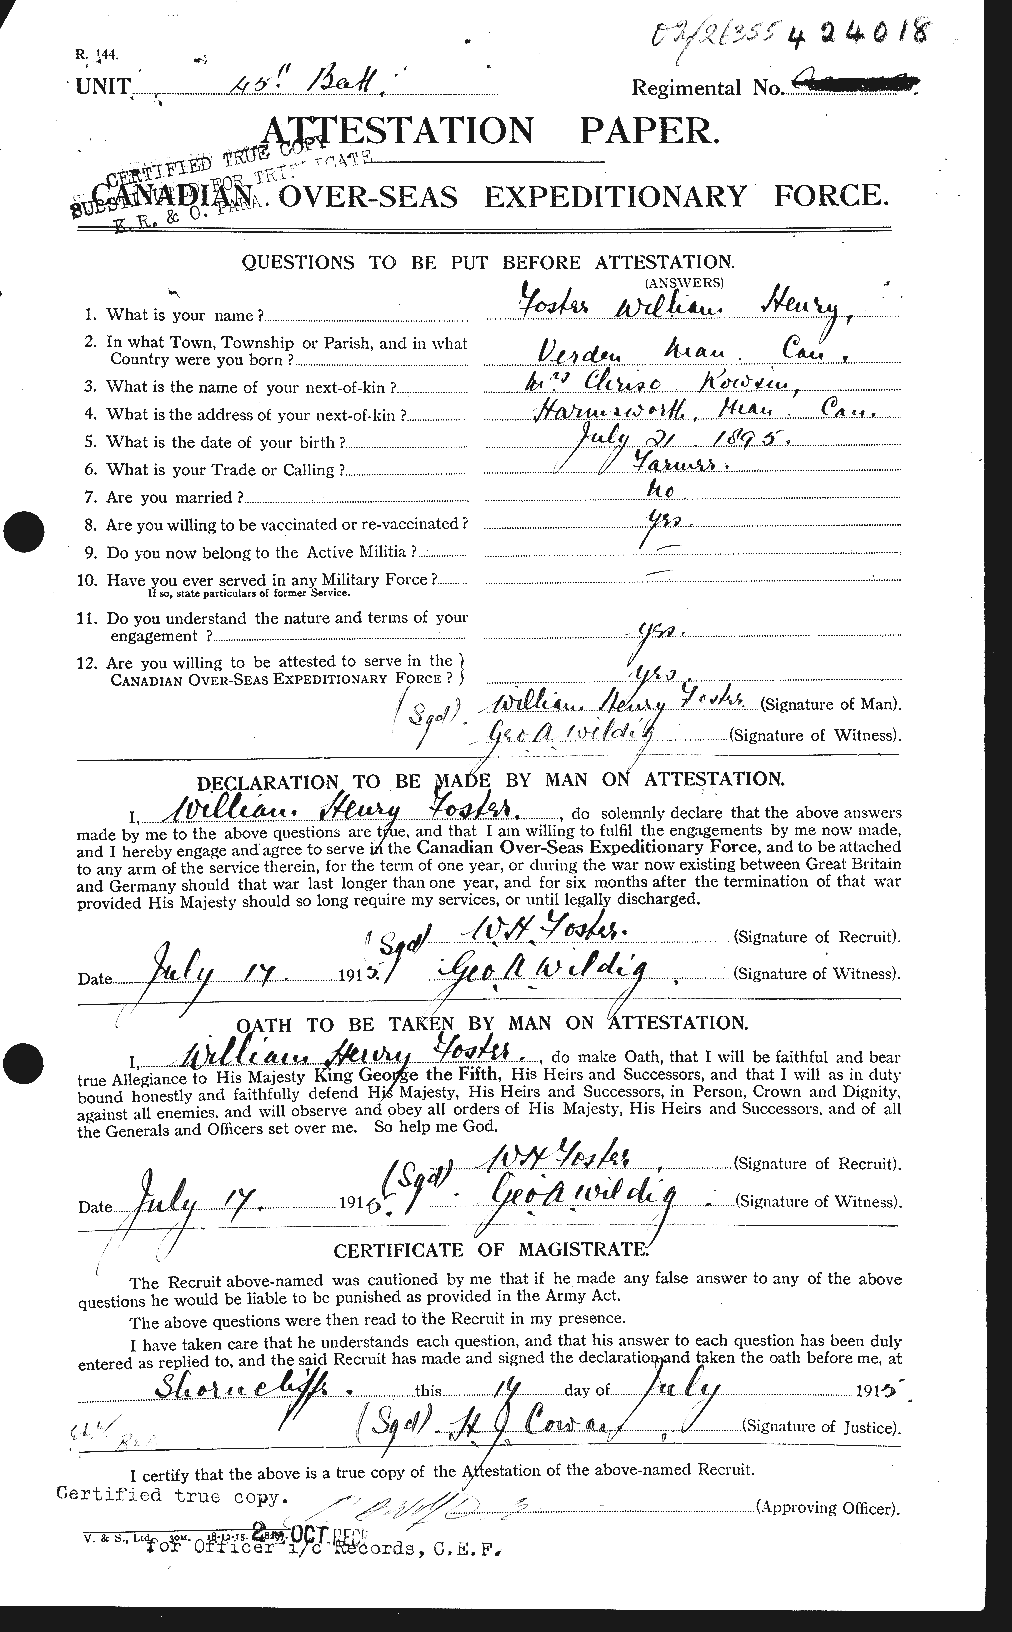 Dossiers du Personnel de la Première Guerre mondiale - CEC 328756a